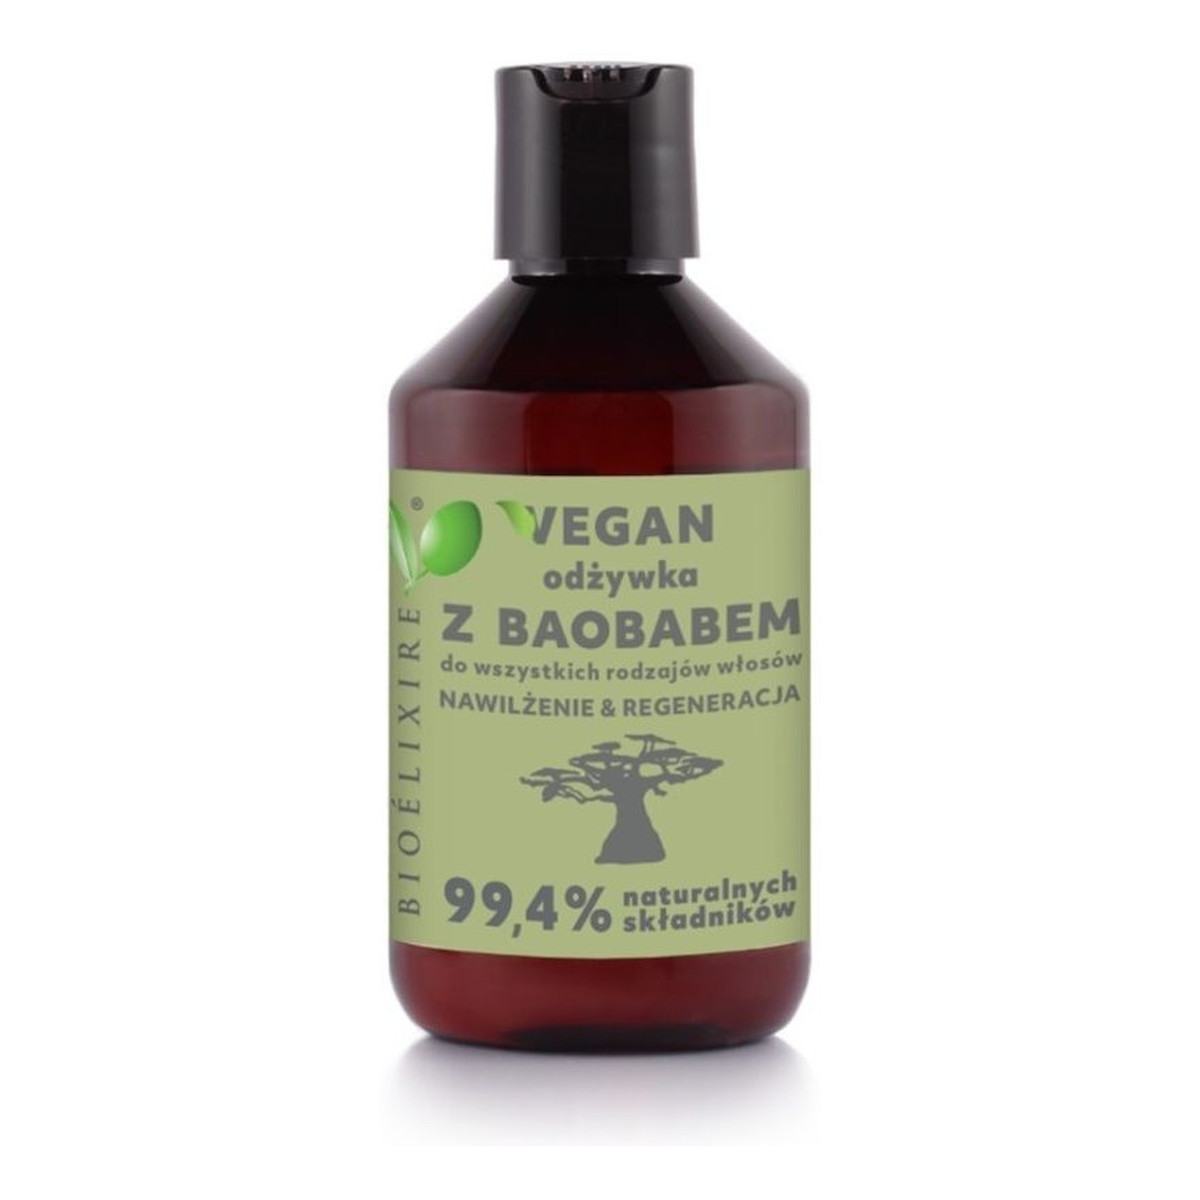 Bioelixire Baobab Vegan odżywka do włosów intensywnie nawilżająca 300ml